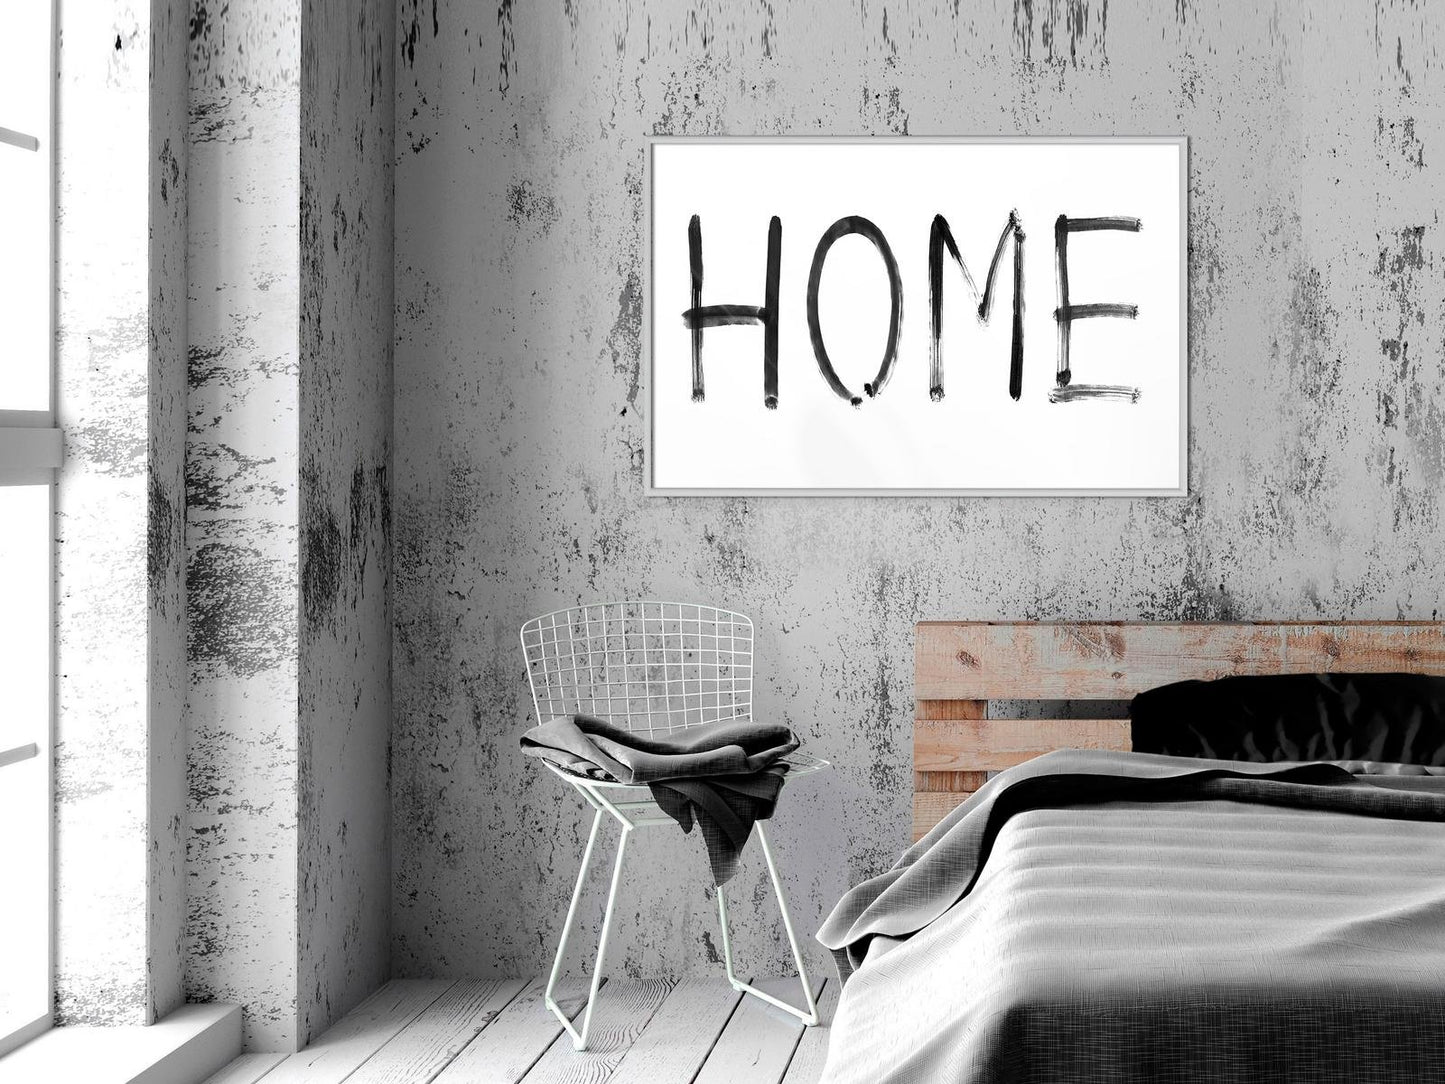 Simply Home (Horizontal)